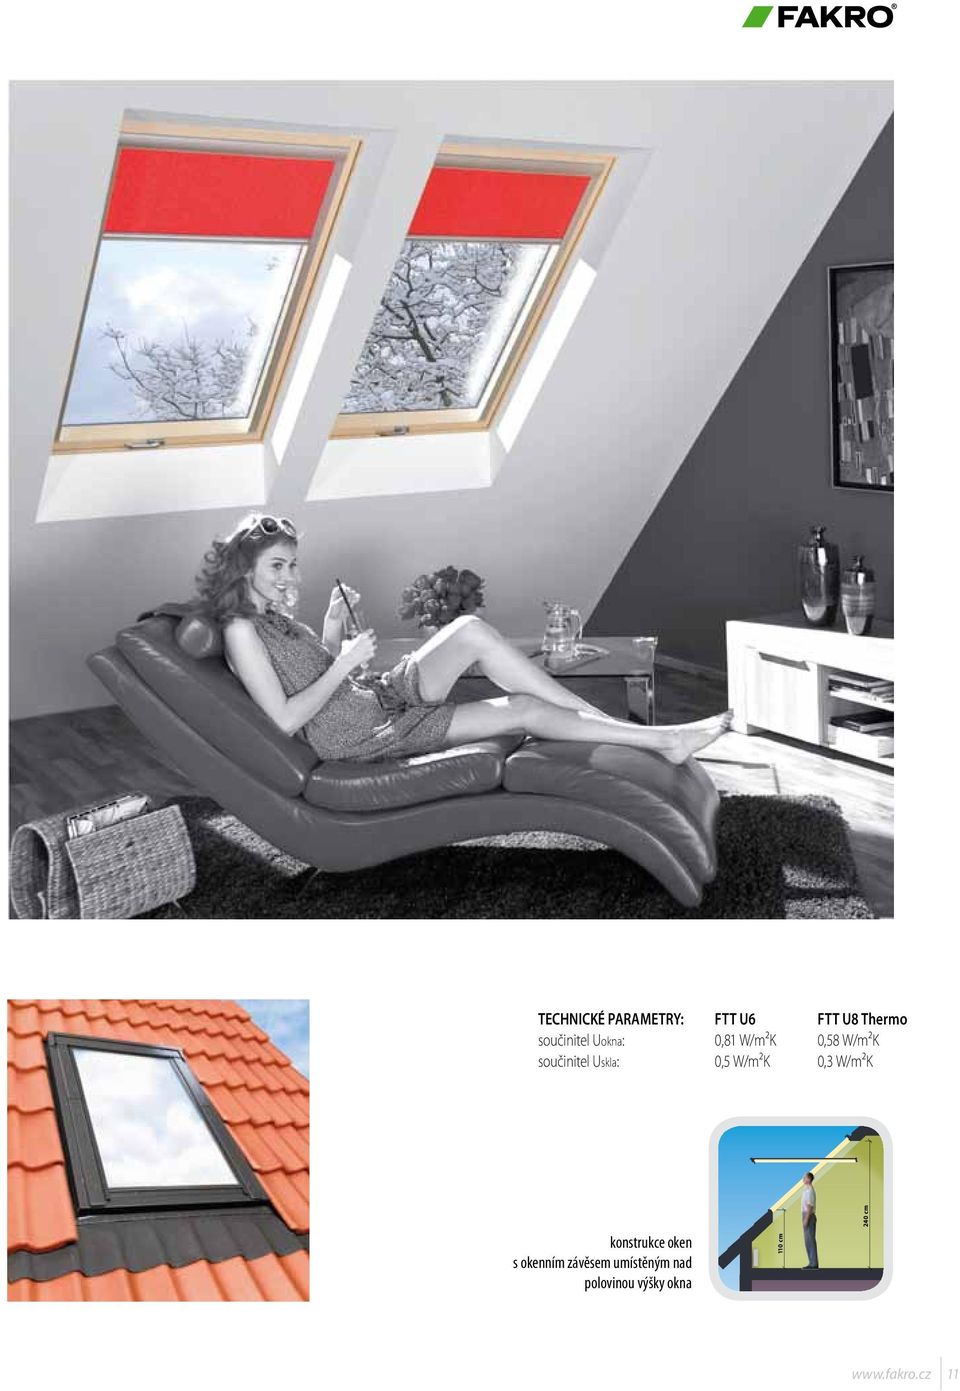 W/m²K 0,3 W/m²K konstrukce oken s okenním závěsem